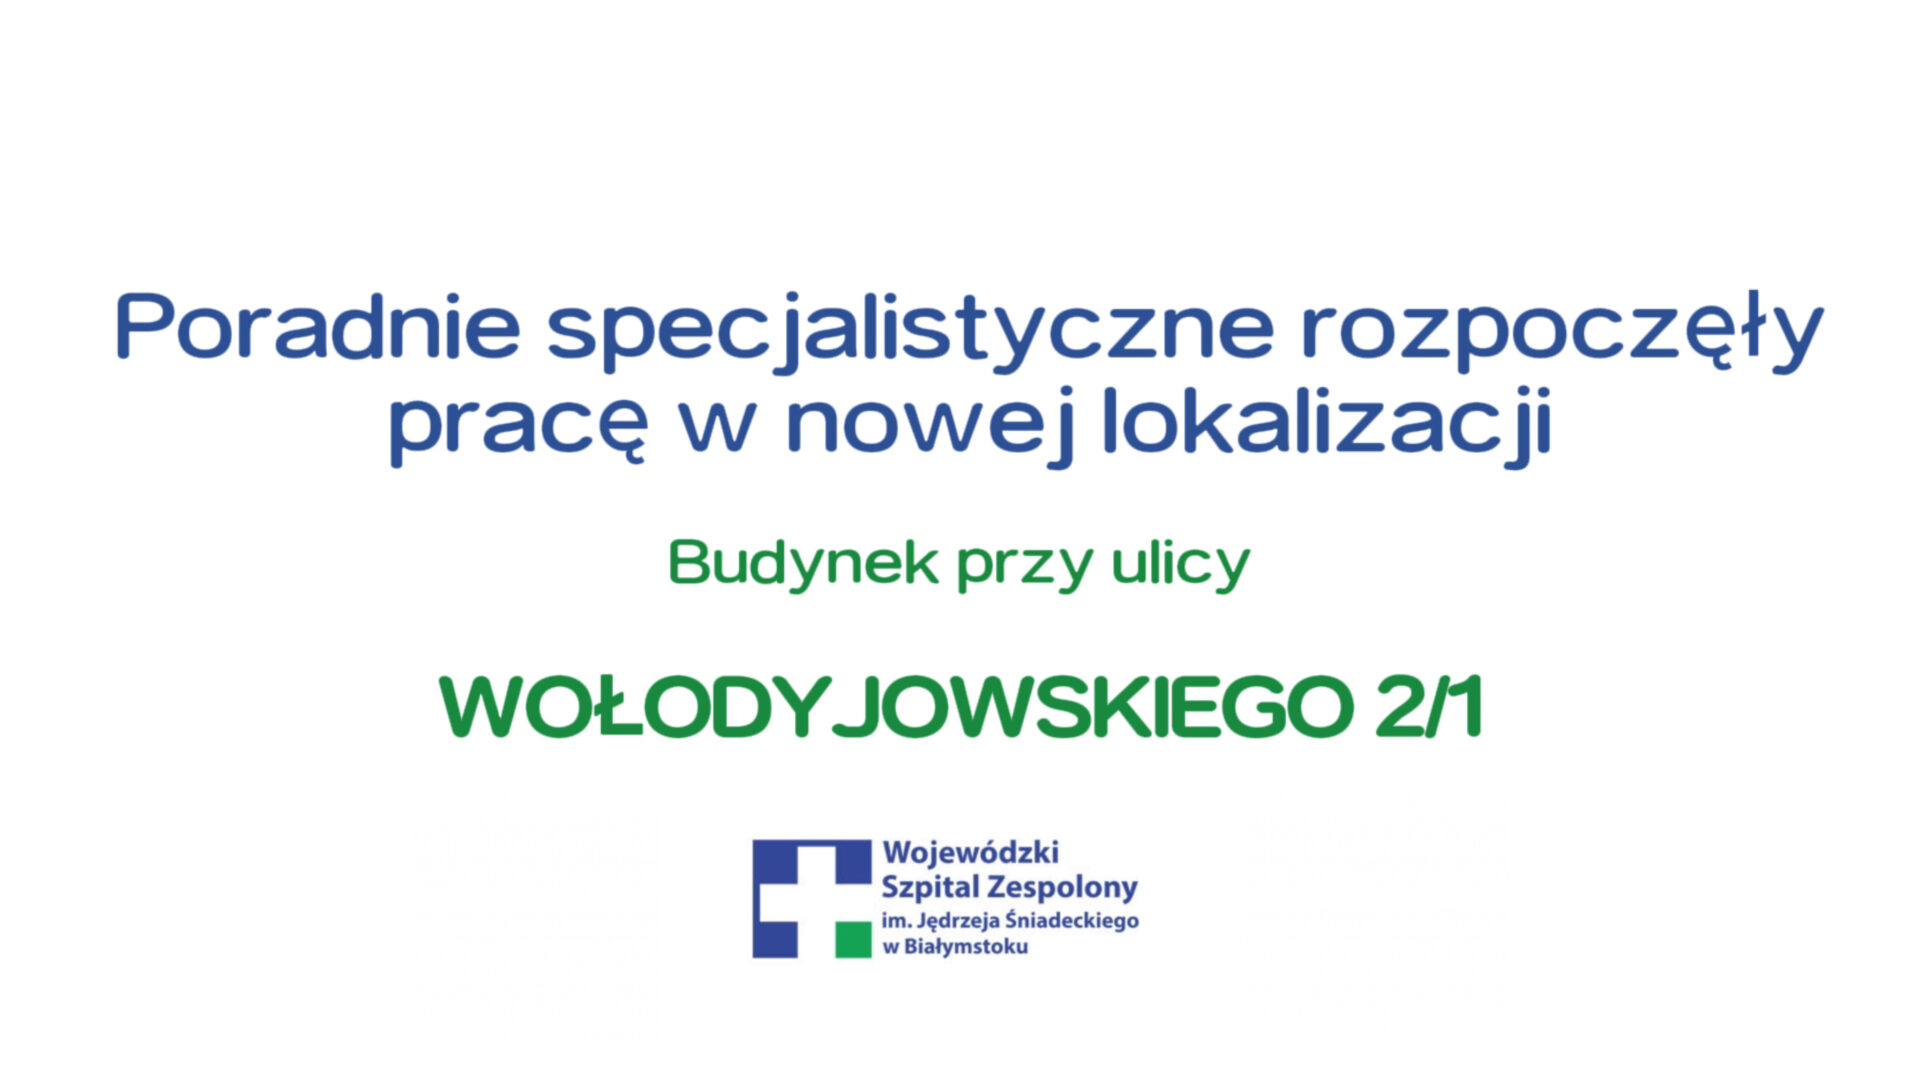 Poradnie specjalistyczne rozpoczęły pracę w budynku przy ulicy Wołodyjowskiego 2/1